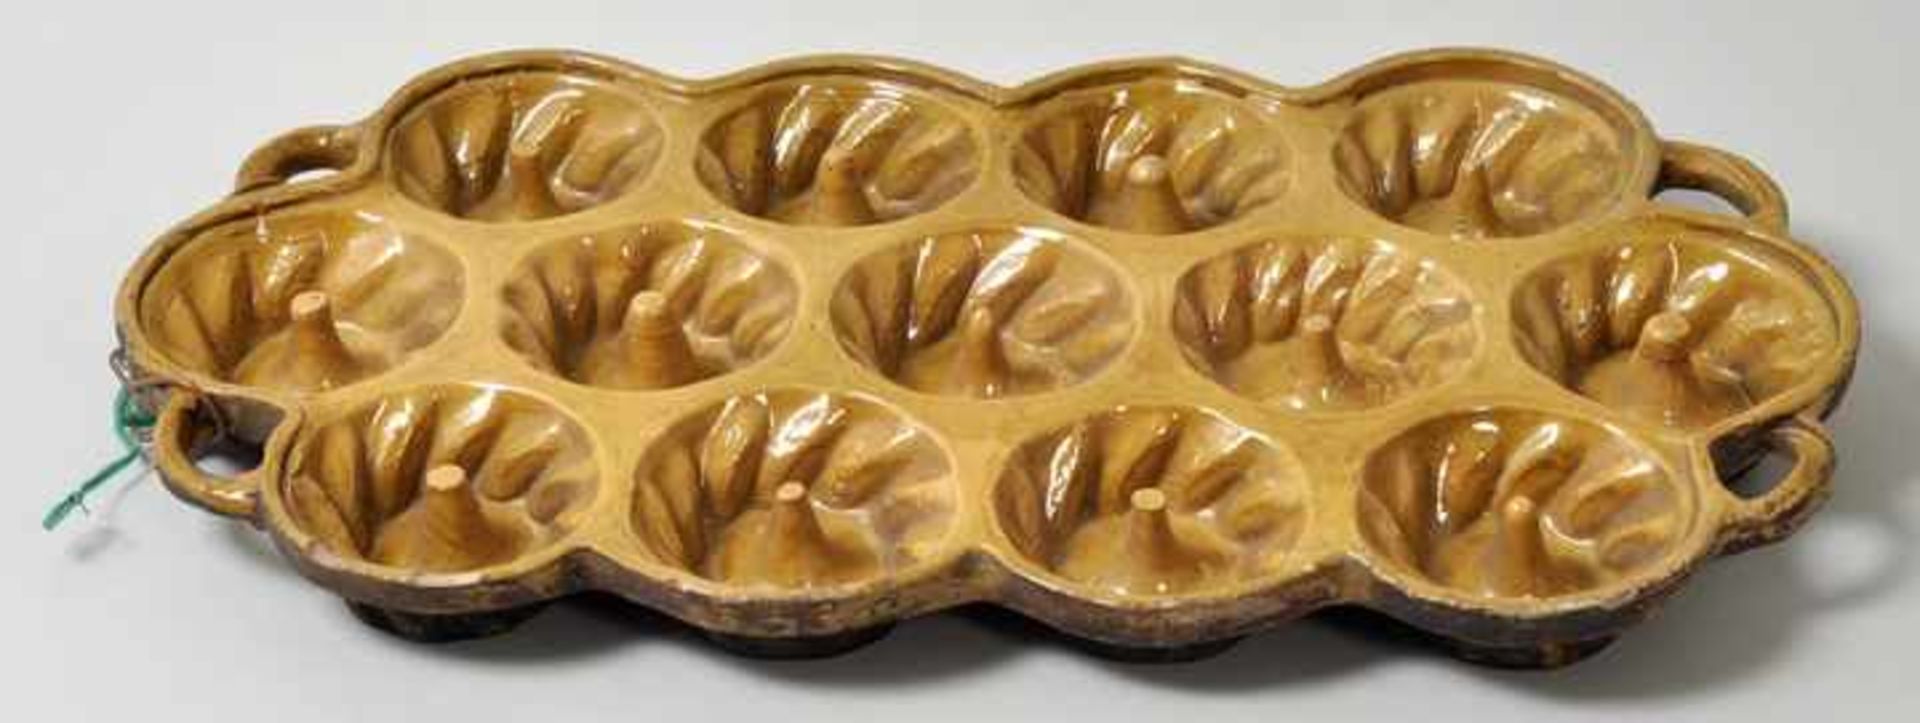 Pfannkuchenform, Alt Kohren, 19. Jh. Keramik/ Irdenware, gelbe Glasur. Form für 13 Pfannkuchen. Rand